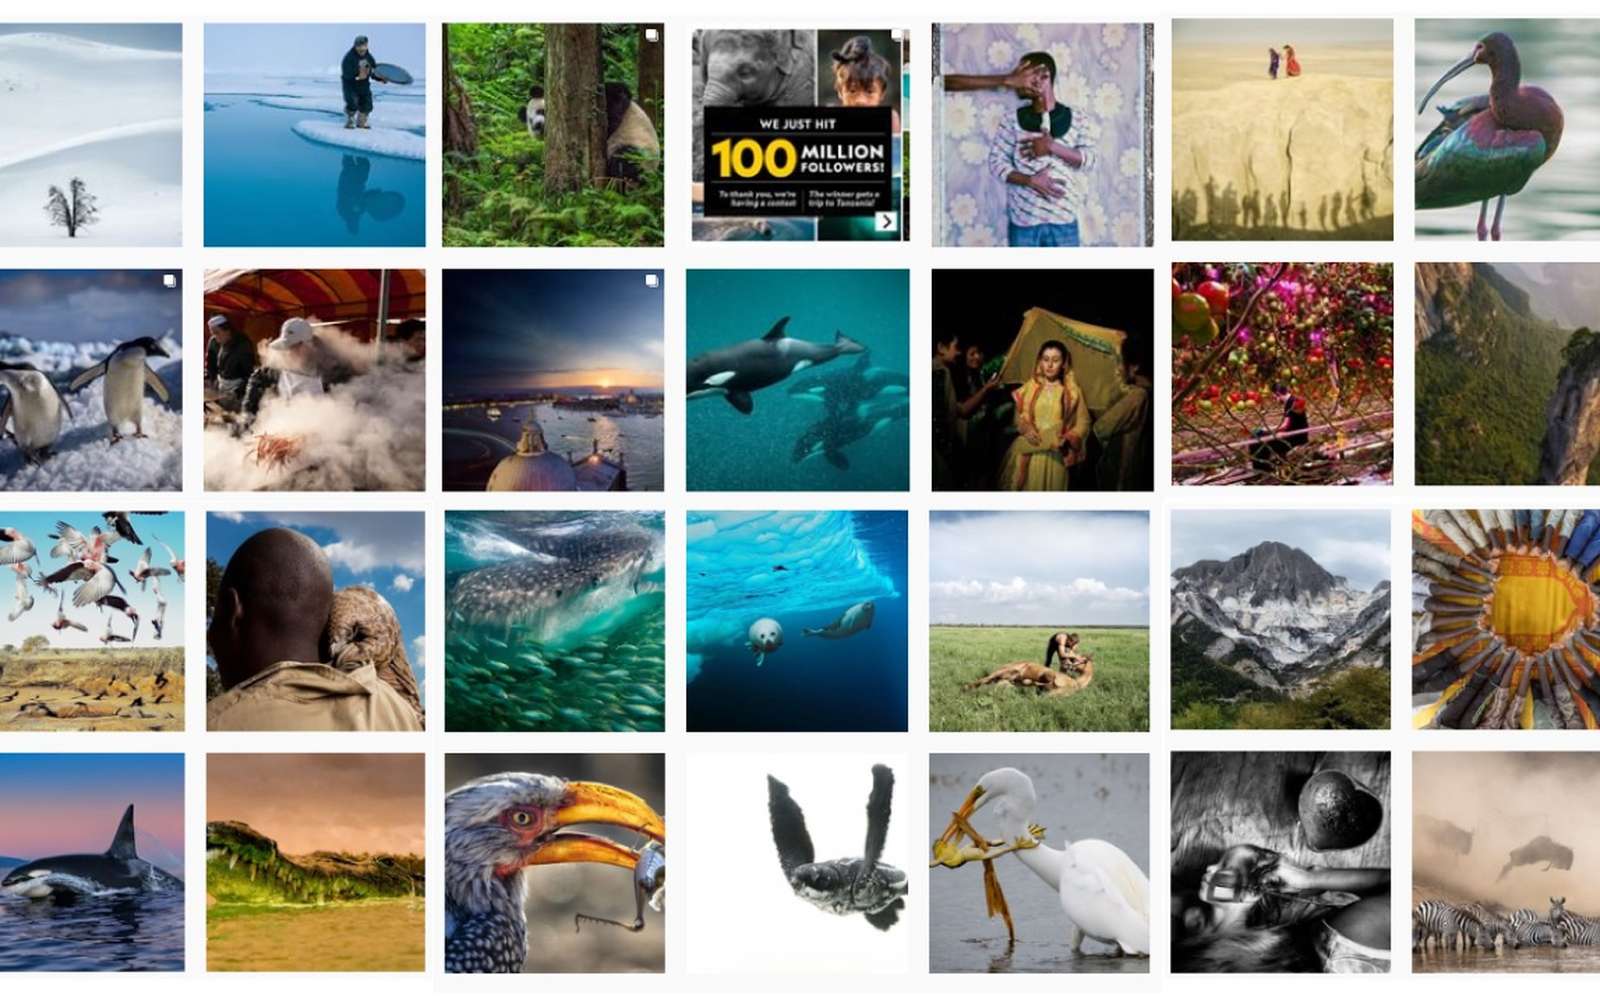 Le National Geographic a fêté ses 100 millions de followers avec un grand concours photo. © National Geographic, Instagram